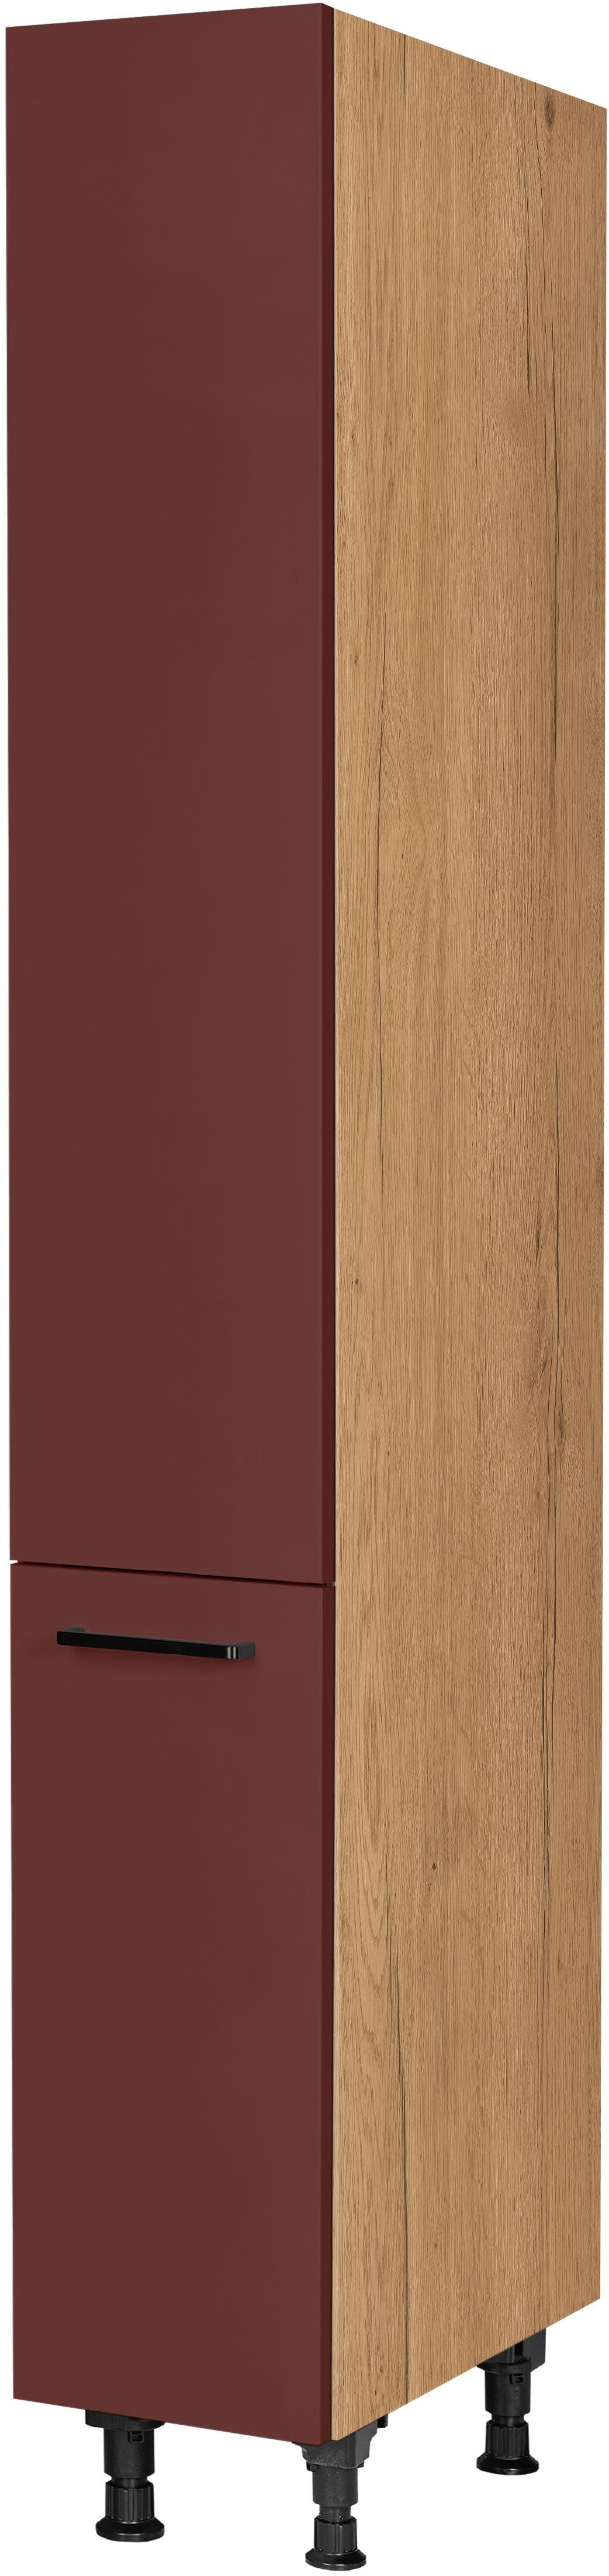 nobilia® Apothekerschrank "Easytouch", mit 5 Einhängekörben, Breite 30 cm, Höhe 216,6 cm, vormontiert, Ein- und Auszugsdämpfung SoftStoppPro